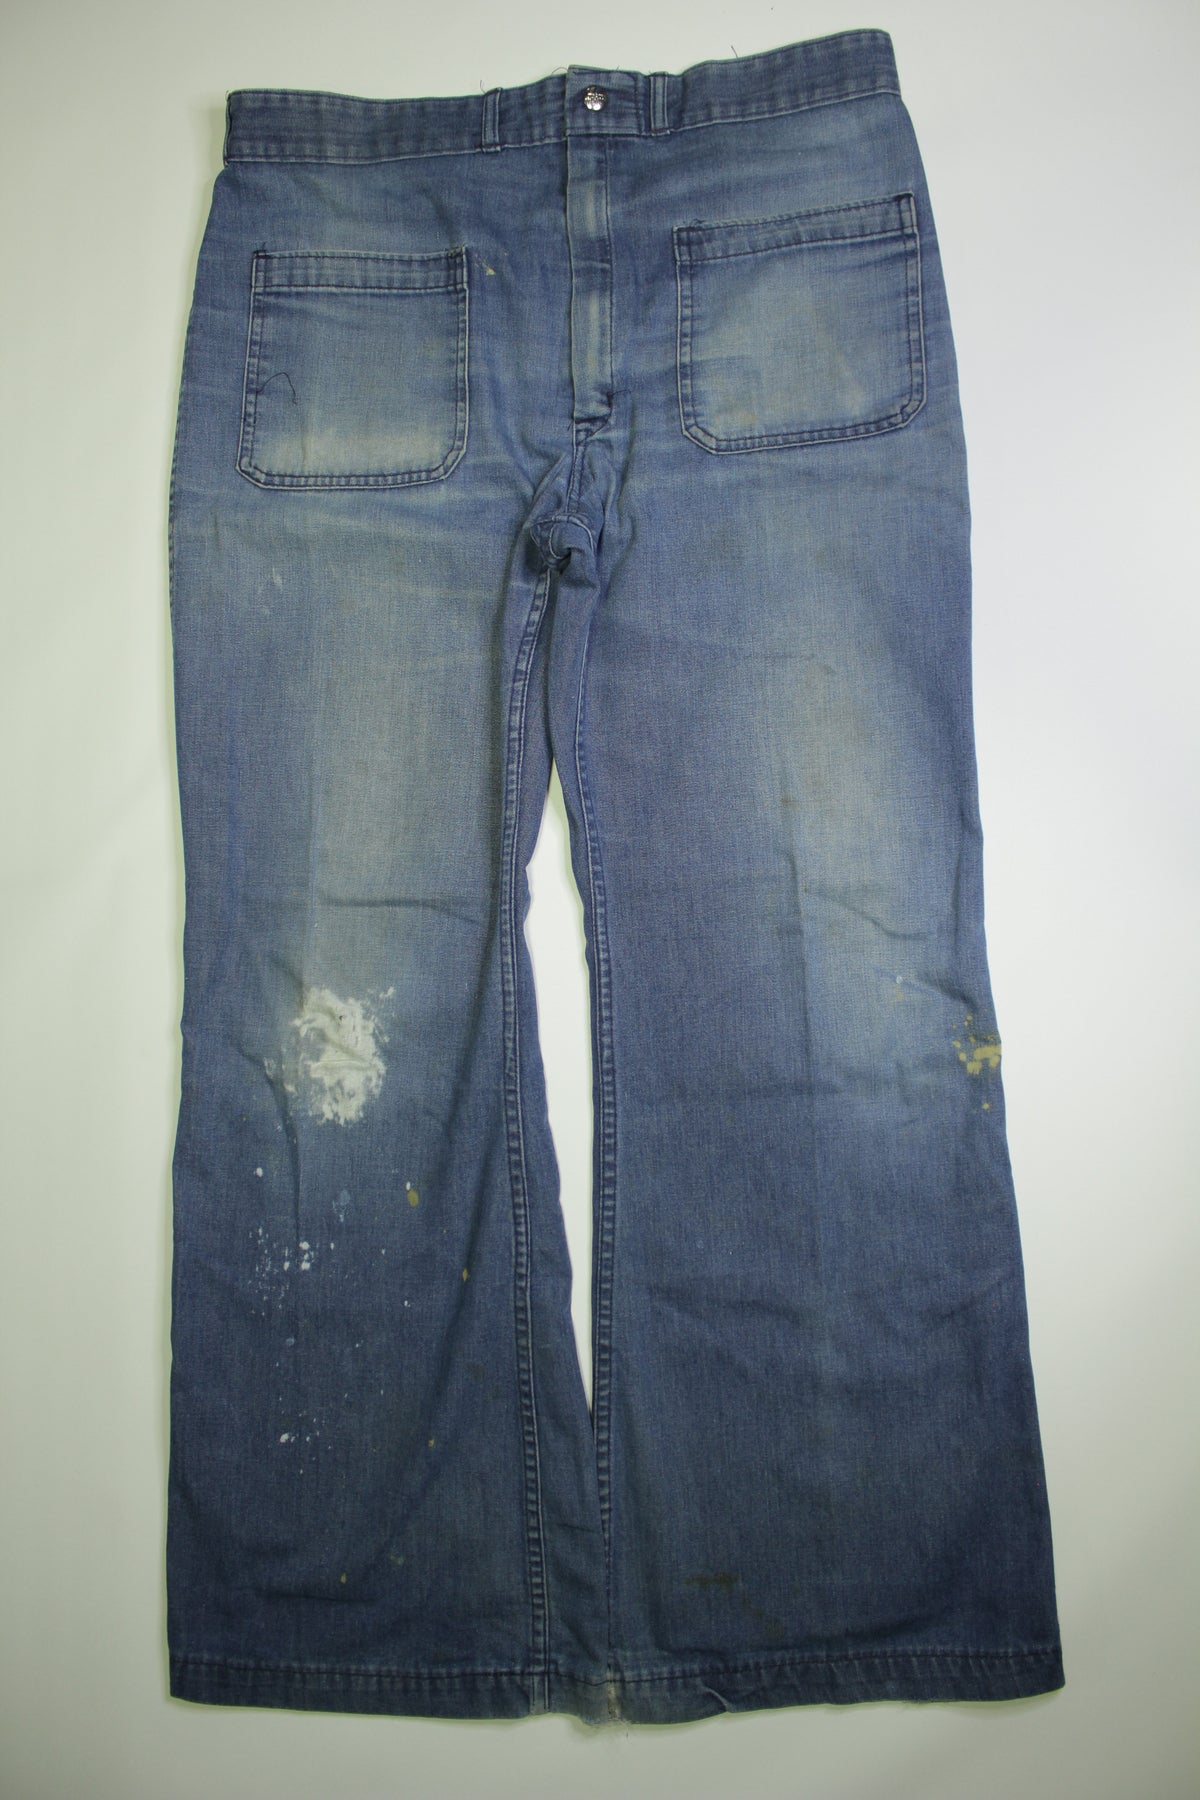 Seafarer Vintage Navy 70's Bell Bottom Jeans USN Denim Flare Pants